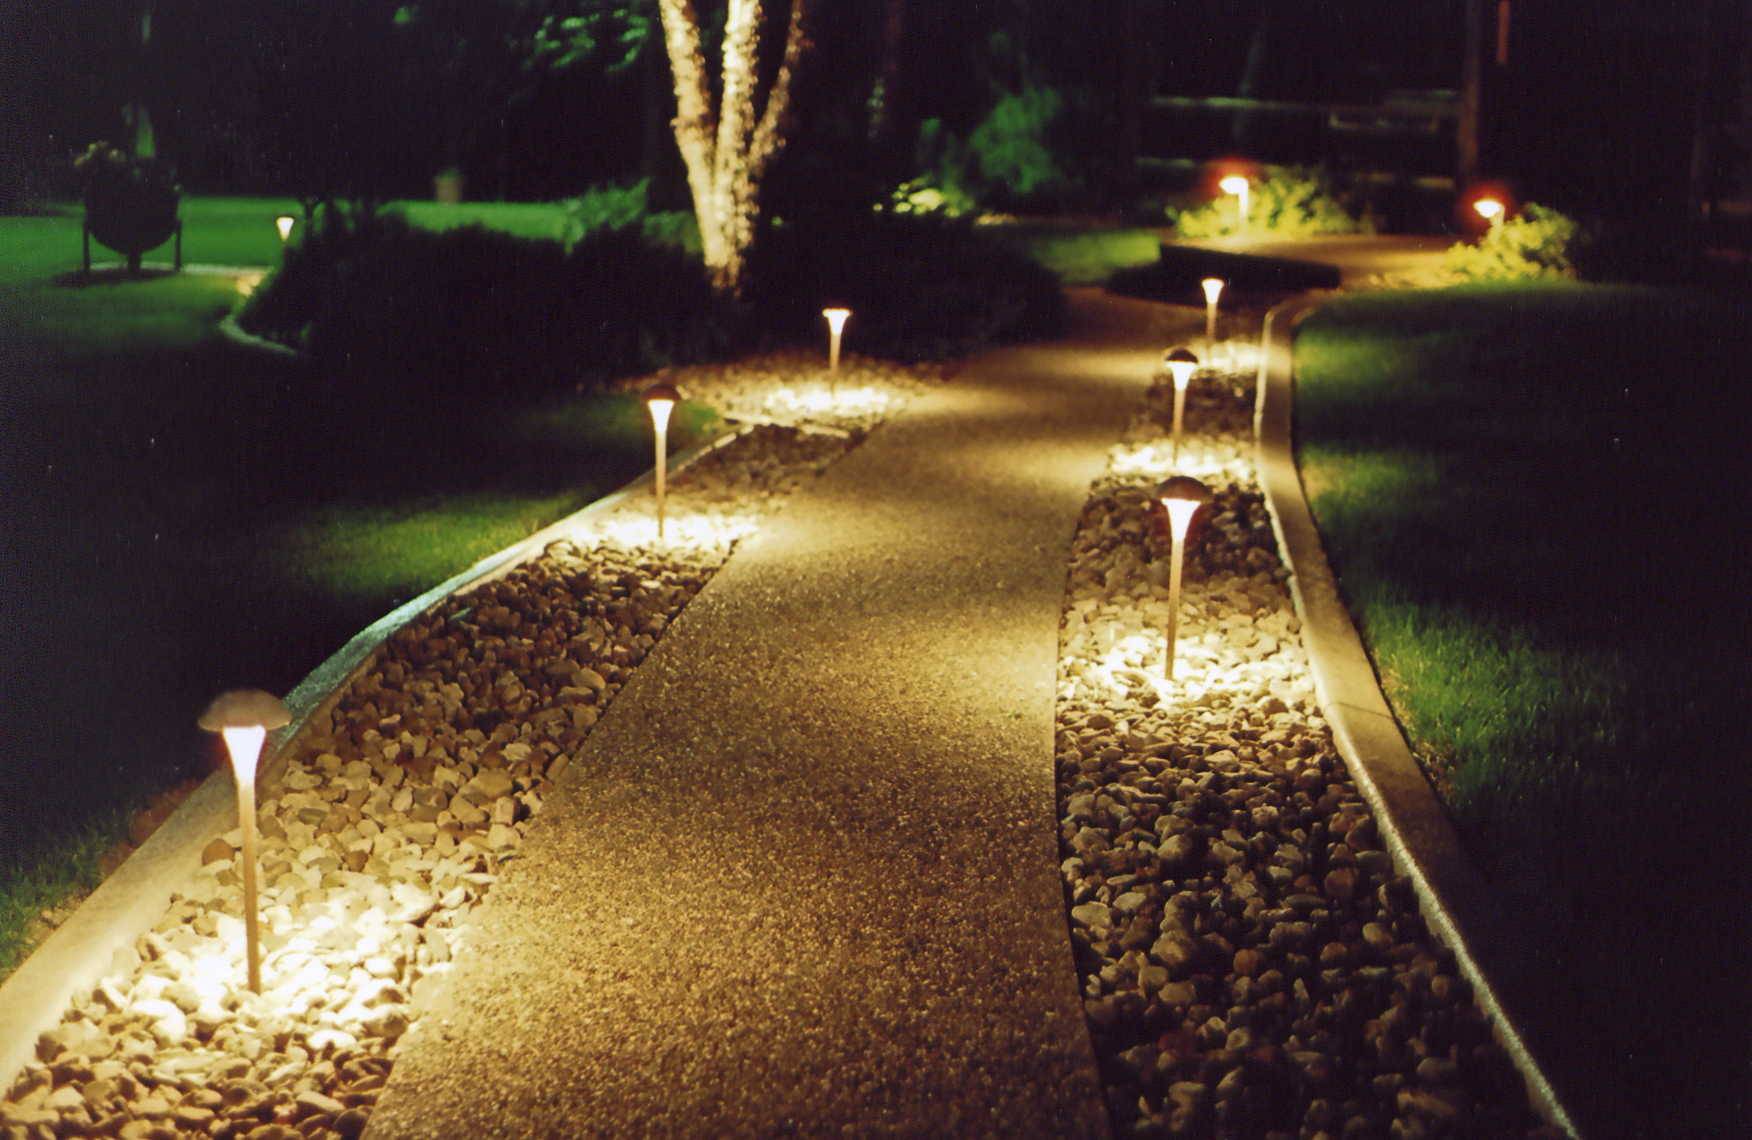 Как сделать самостоятельно светильники для садовых дорожек: варианты освещения